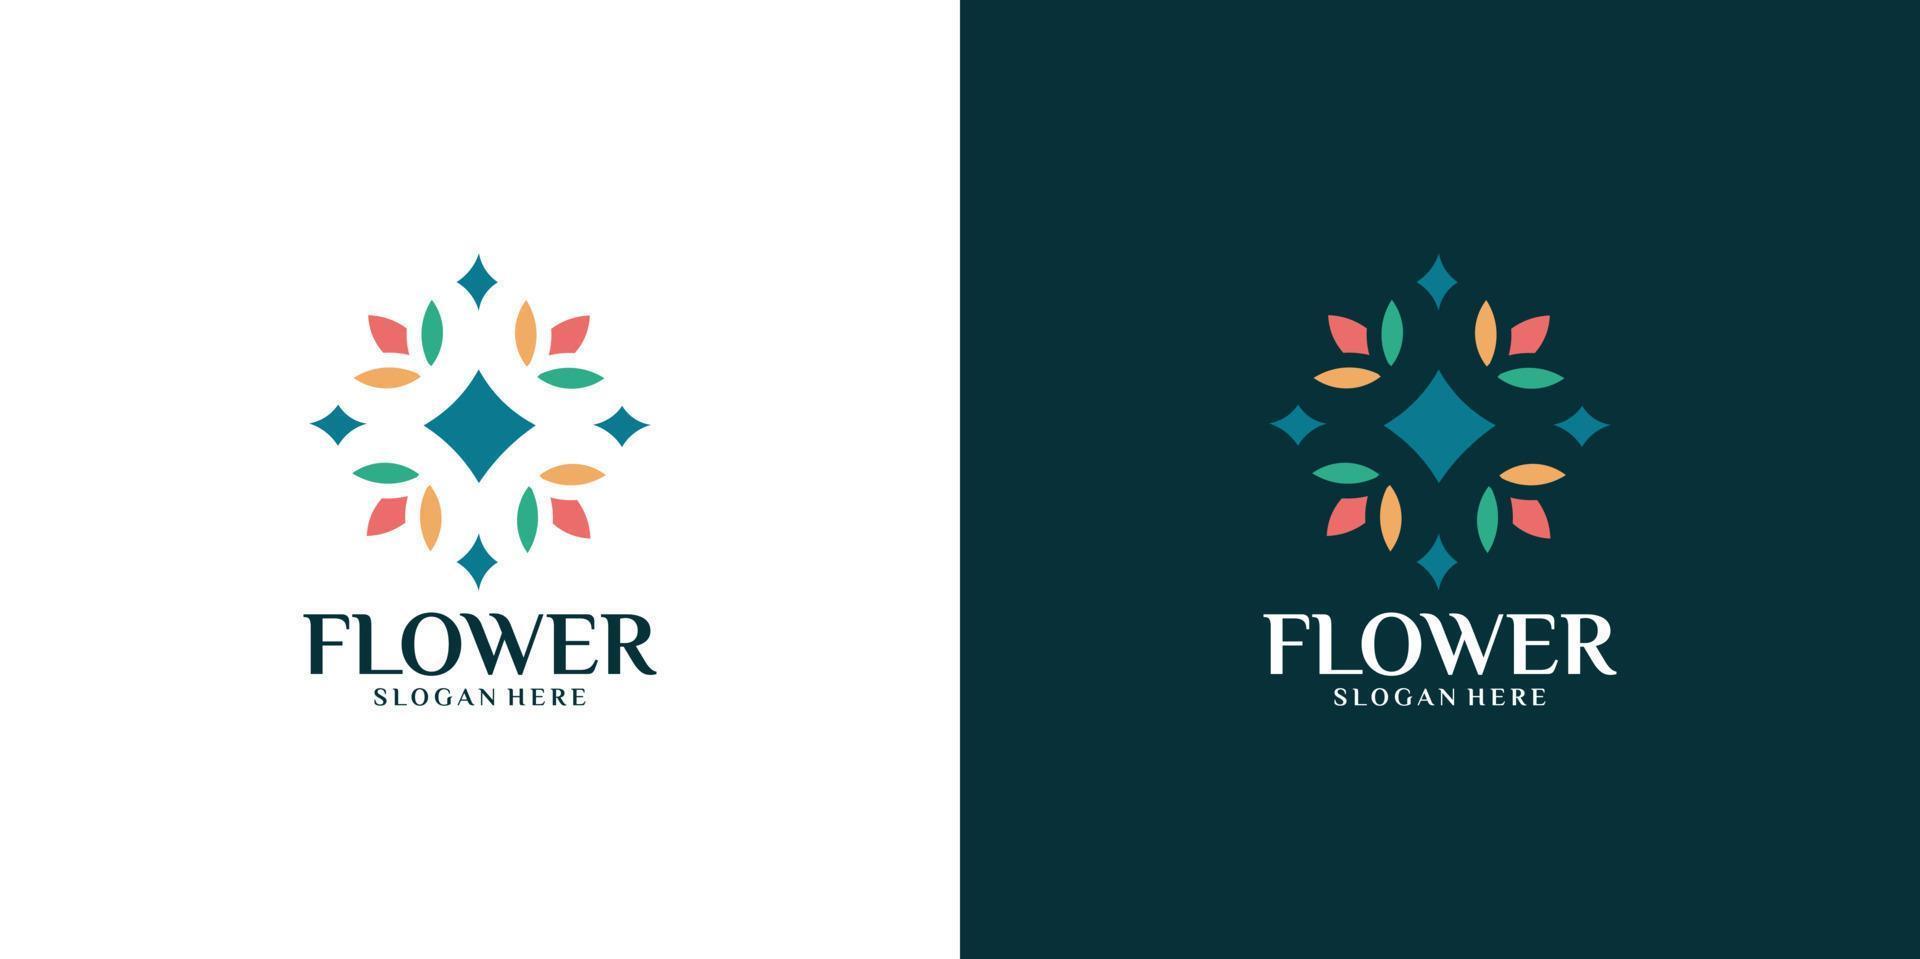 conjunto de logotipo de flor colorida minimalista vetor